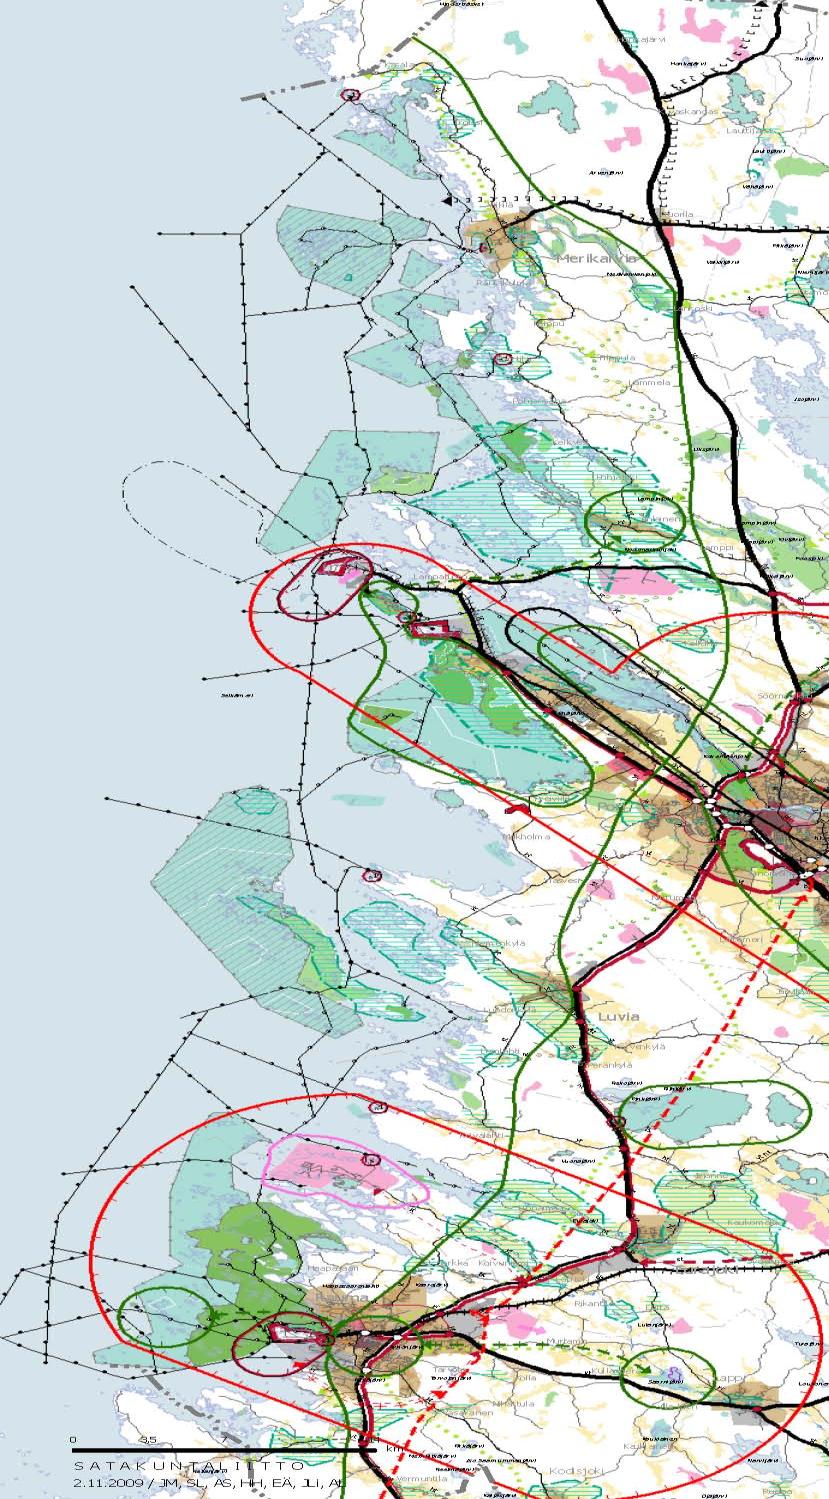 Satakunta regional plan/land use